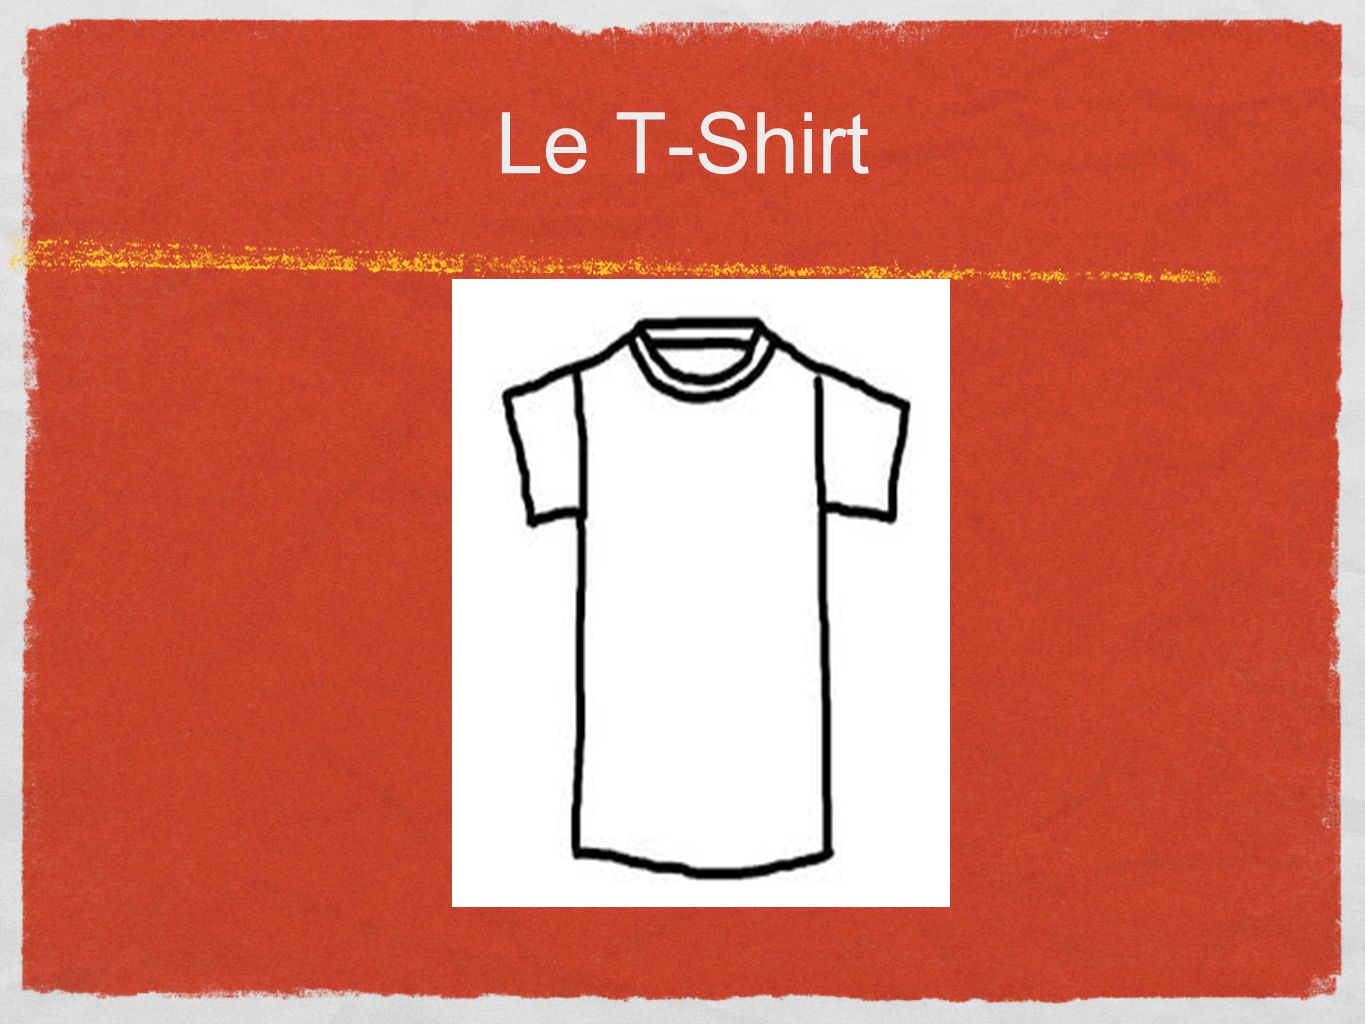 Le T-Shirt